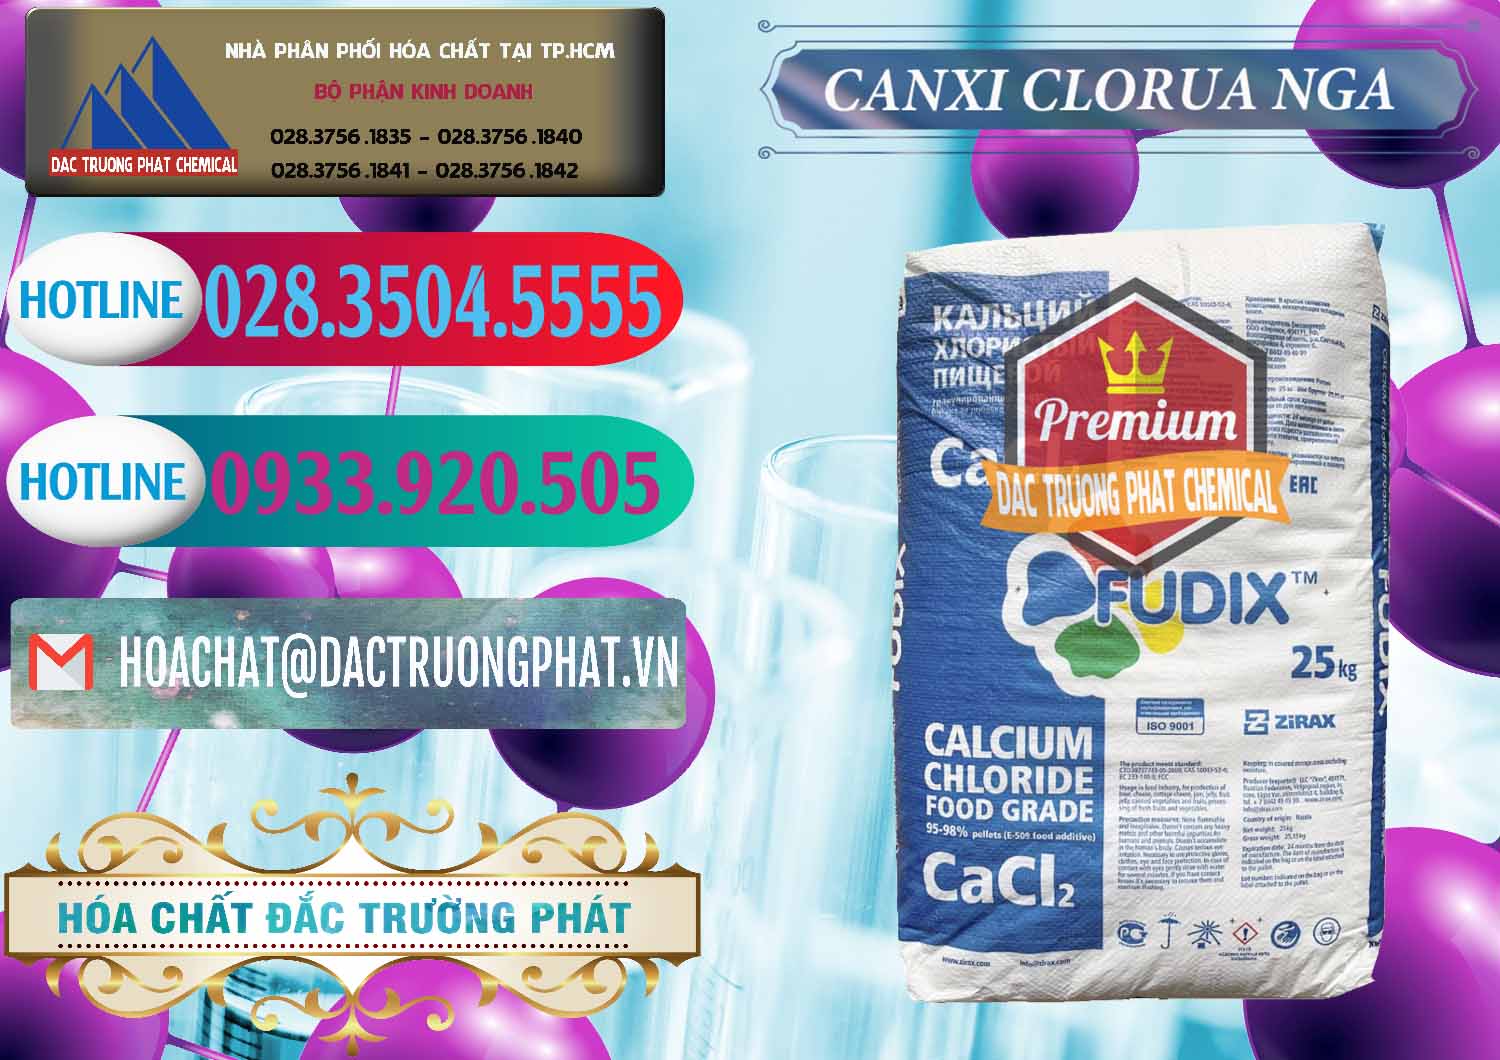 Nơi chuyên kinh doanh _ bán CaCl2 – Canxi Clorua Nga Russia - 0430 - Nơi chuyên cung cấp ( kinh doanh ) hóa chất tại TP.HCM - truongphat.vn